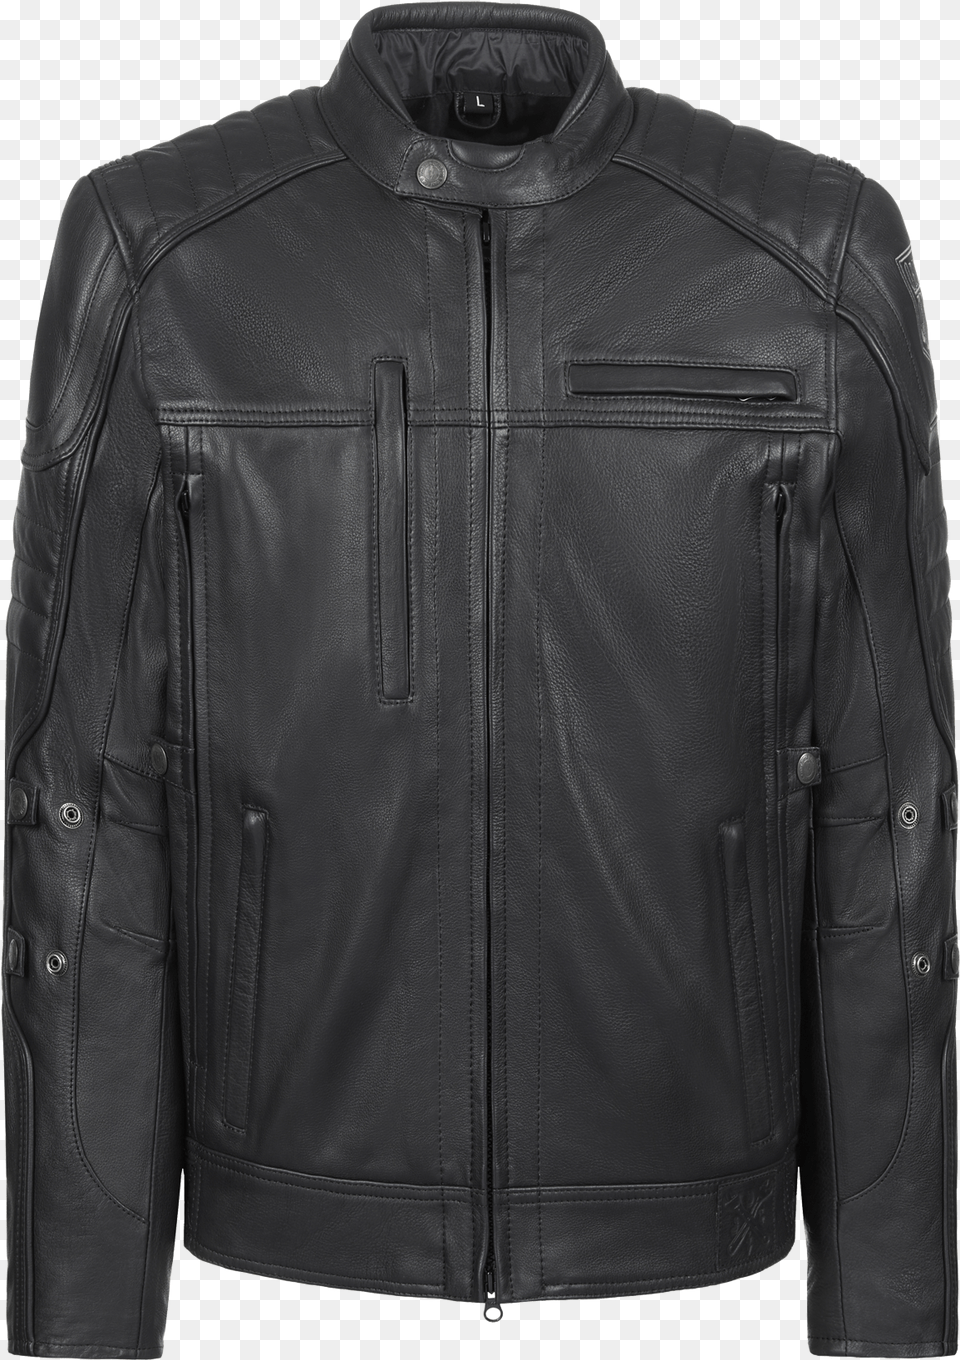 John Doe Kevlar Leather Jacket, Clothing, Coat, Leather Jacket Free Png